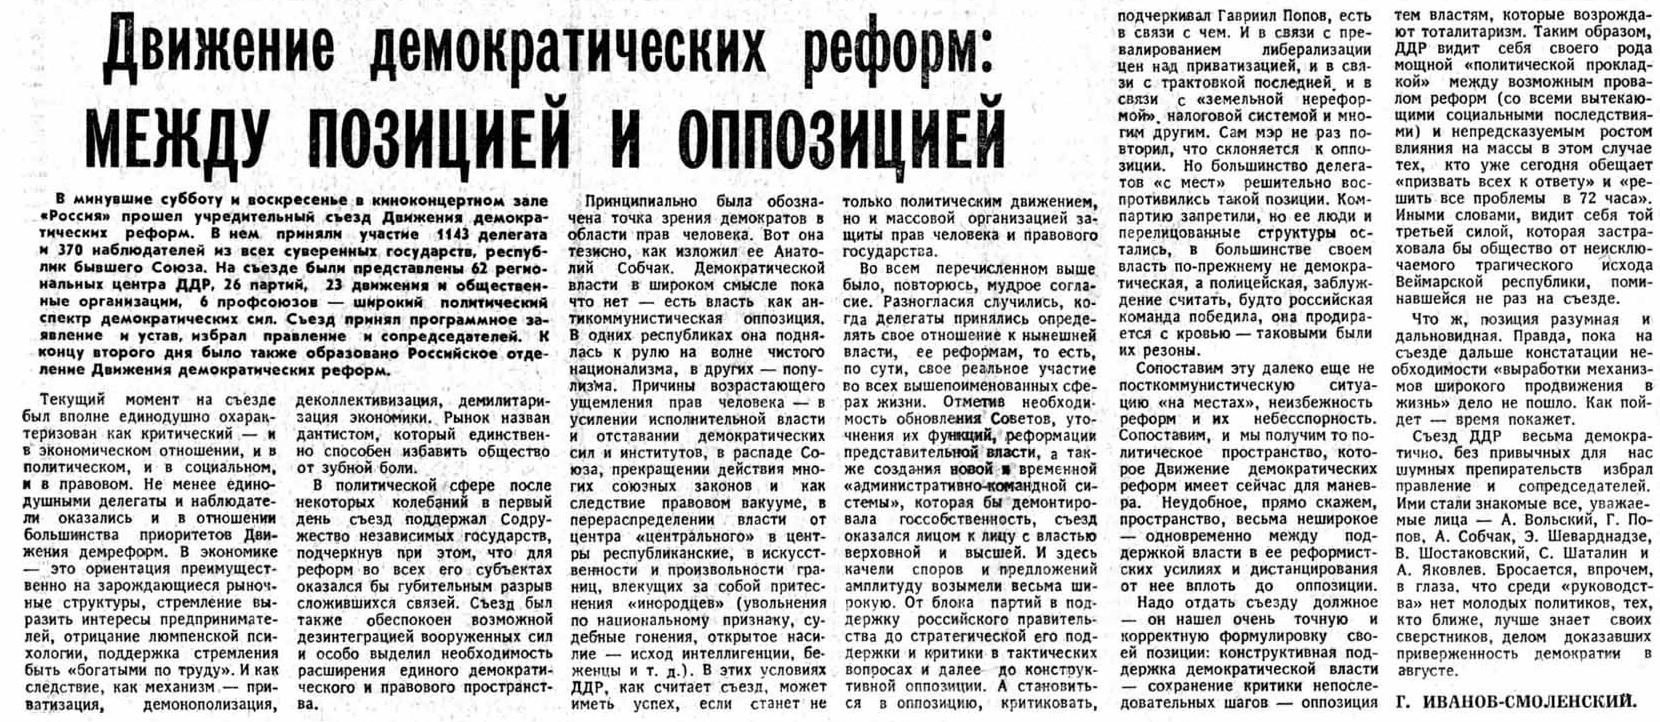 Передовица газеты &laquo;Известия&raquo; от&nbsp;16 декабря 1991 года